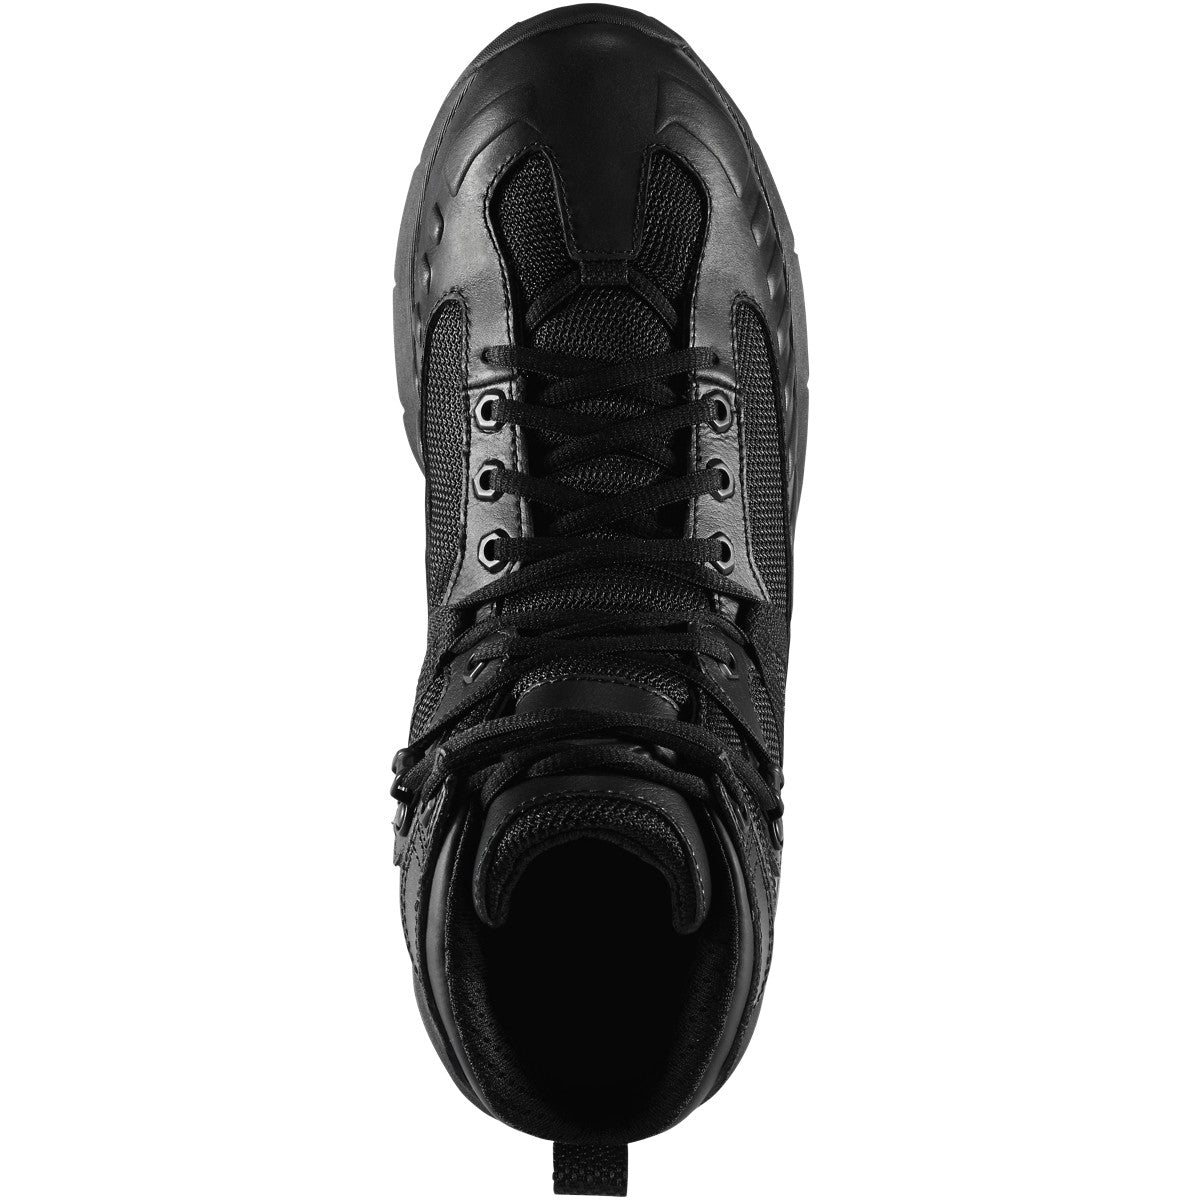 Danner Men's Fullbore 4.5" Waterproof Duty Boot - Black - 20511  - Overlook Boots